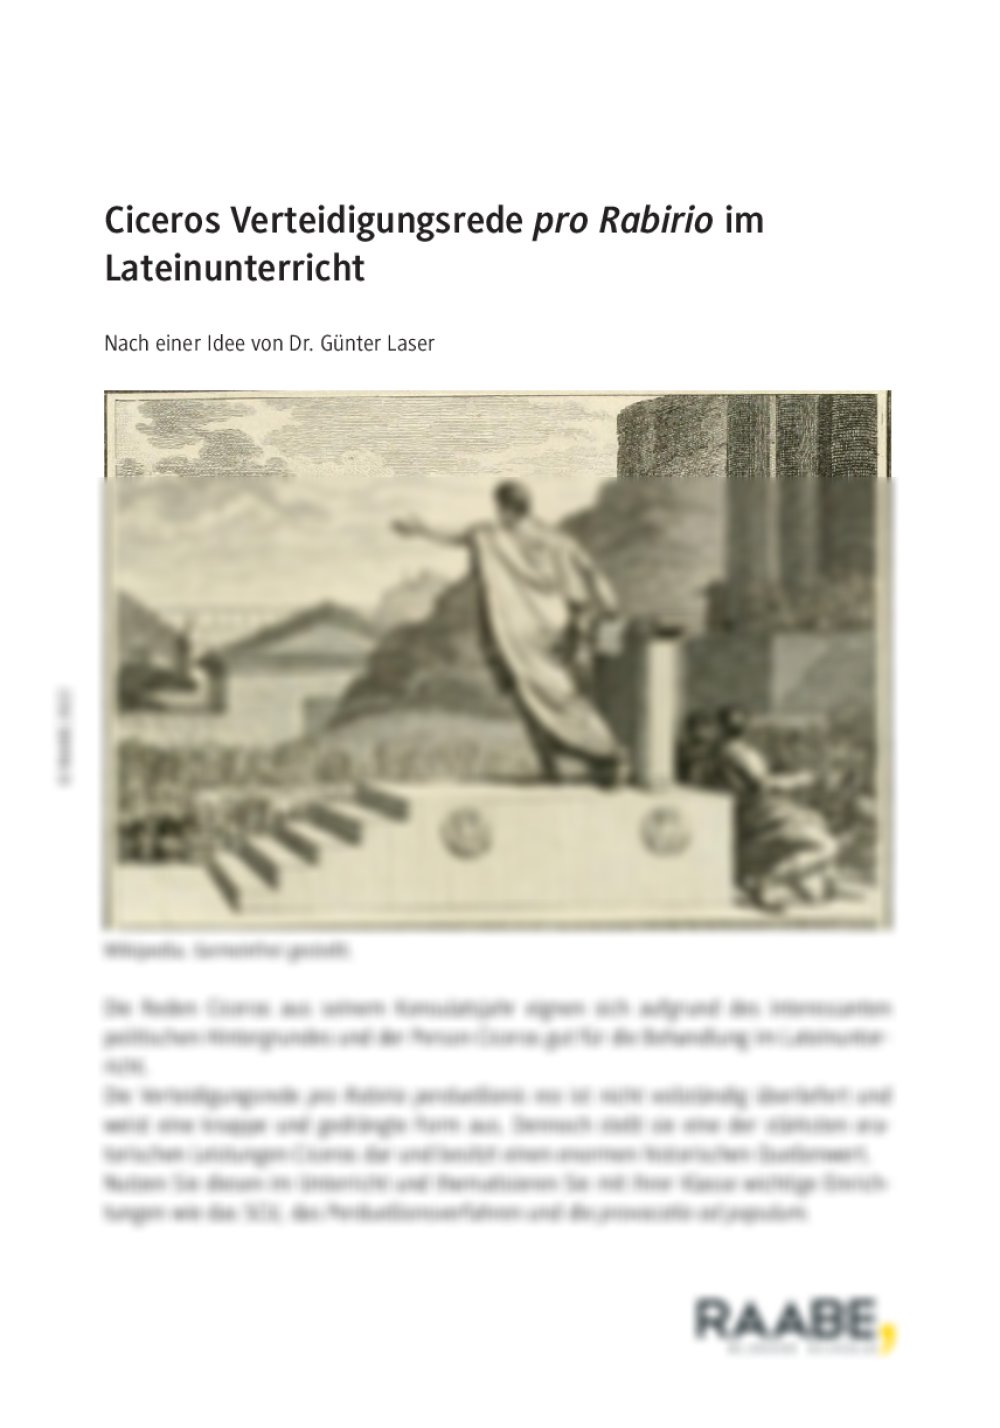 Ciceros Verteidigungsrede "pro Rabirio" im Lateinunterricht - Seite 1